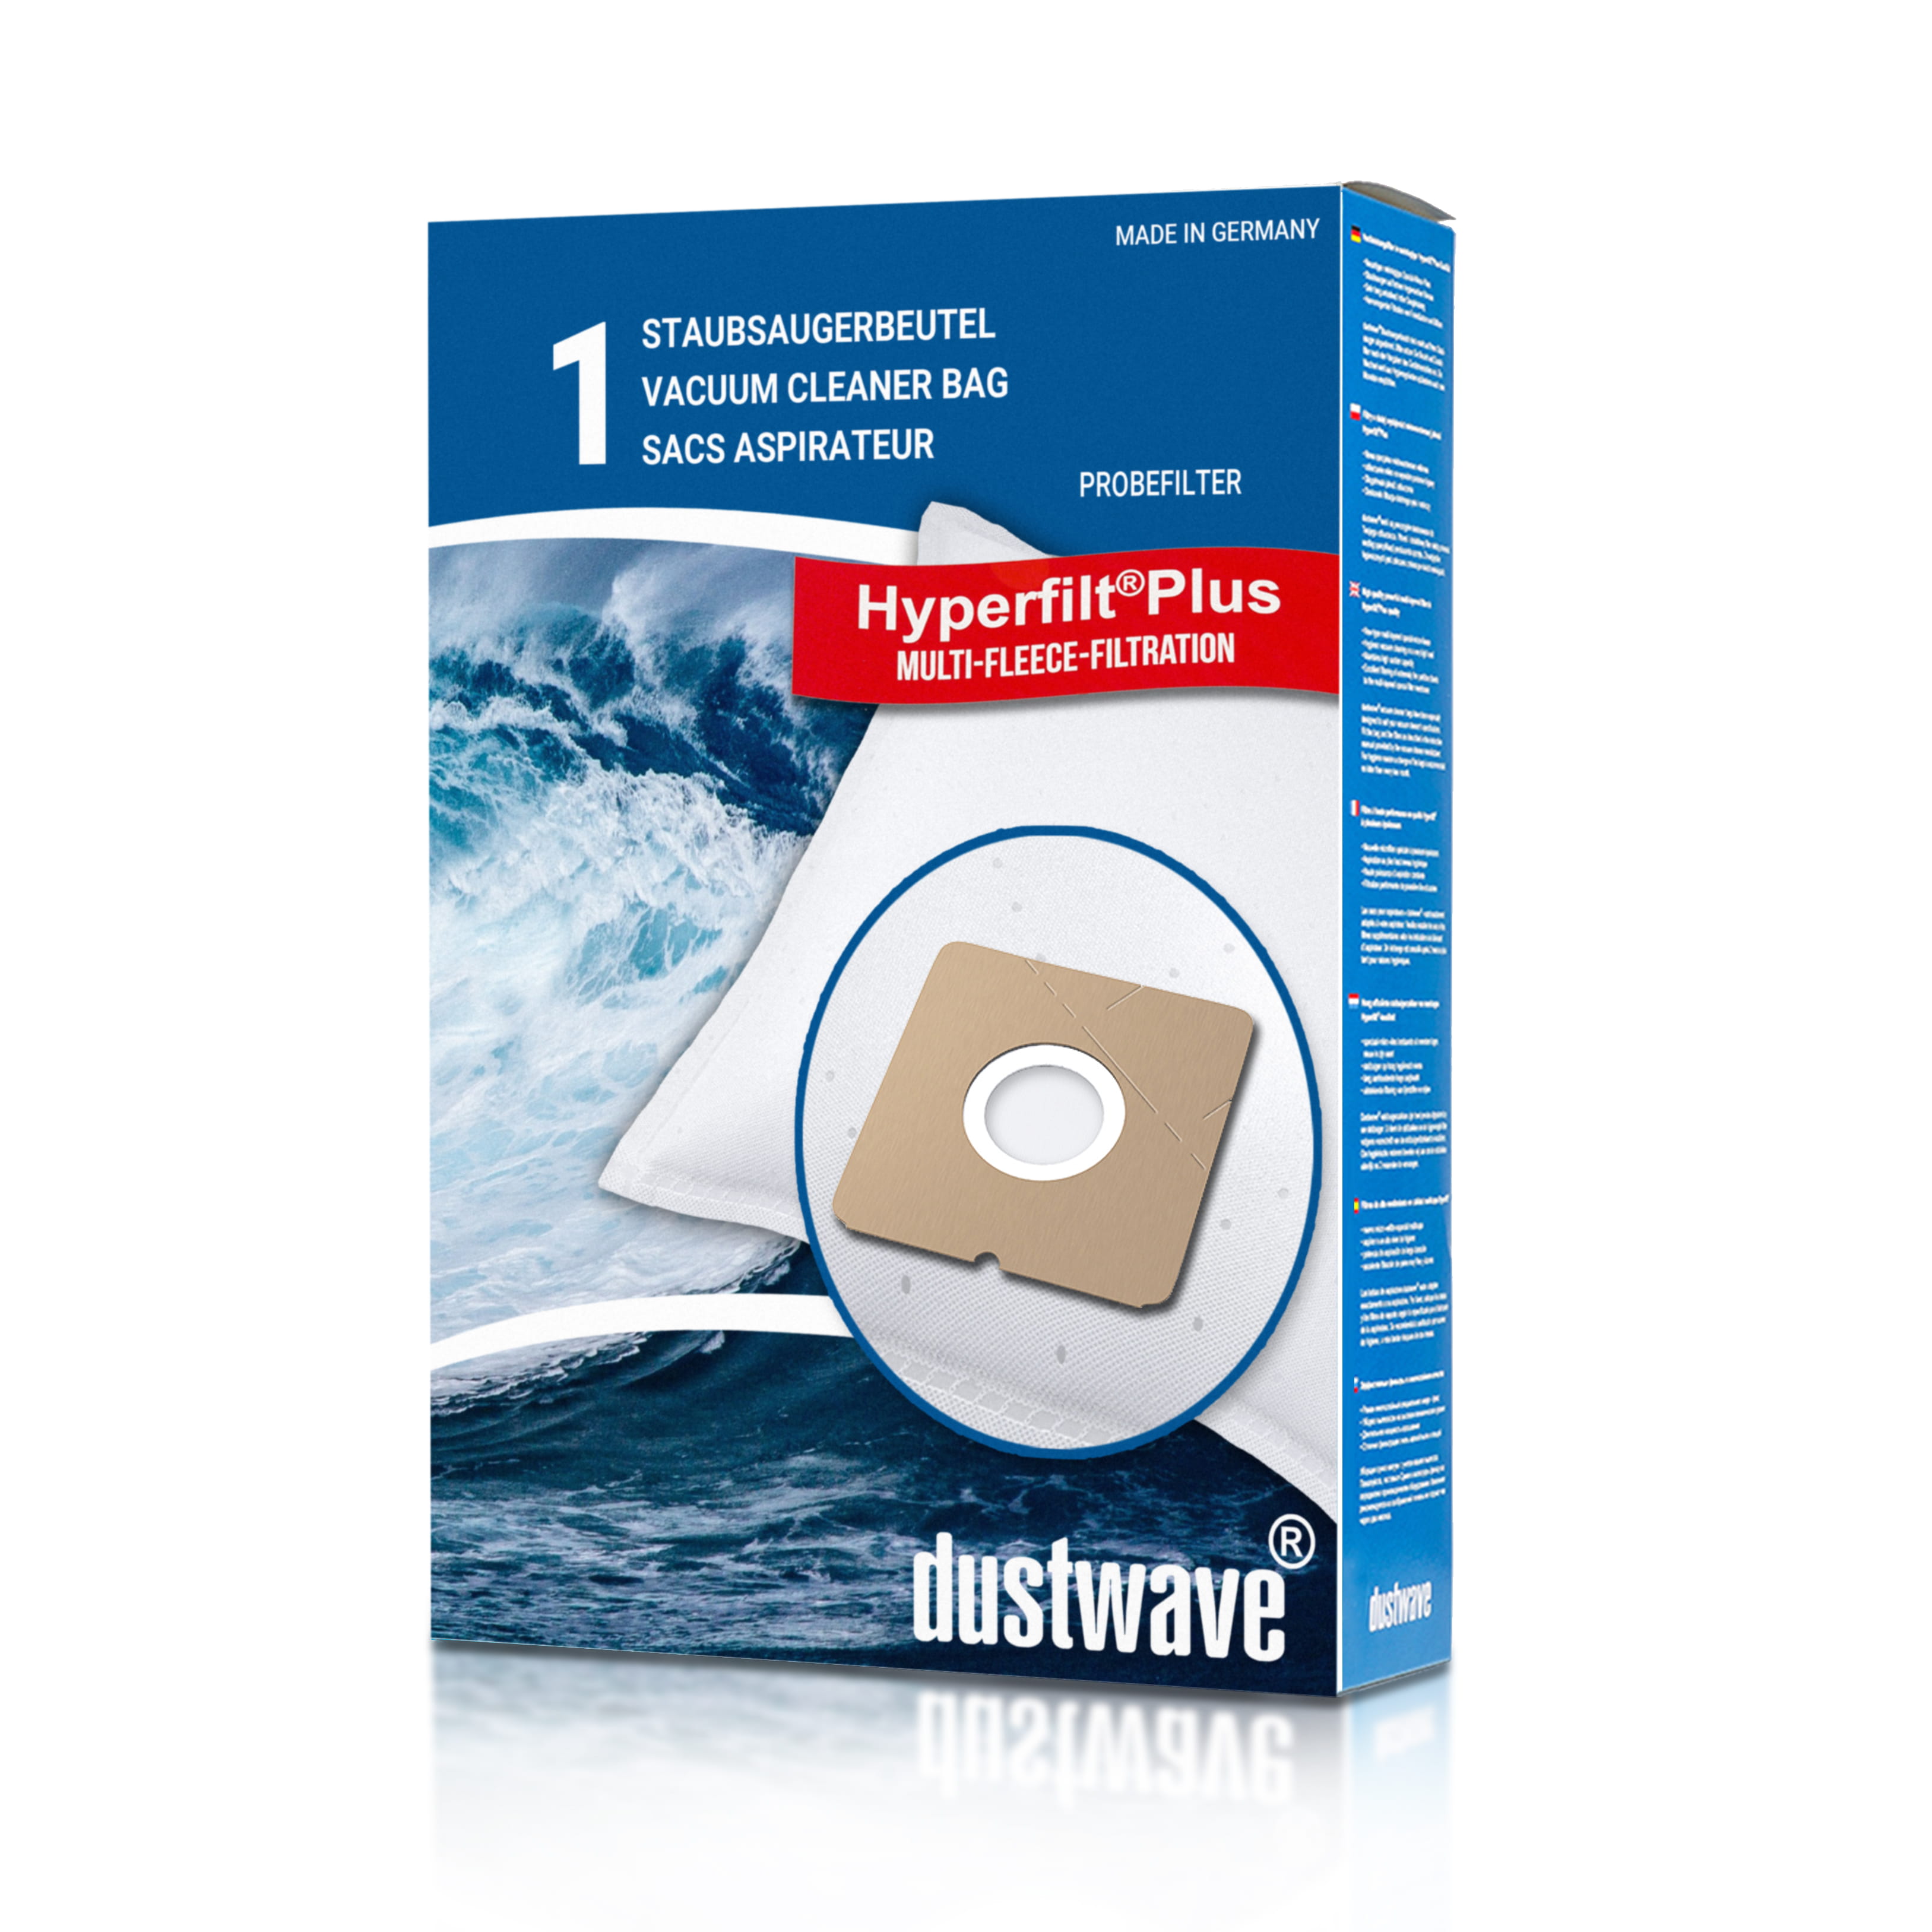 Dustwave® 1 Staubsaugerbeutel für Bomann BS 902 CB / BS902CB - hocheffizient mit Hygieneverschluss - Made in Germany